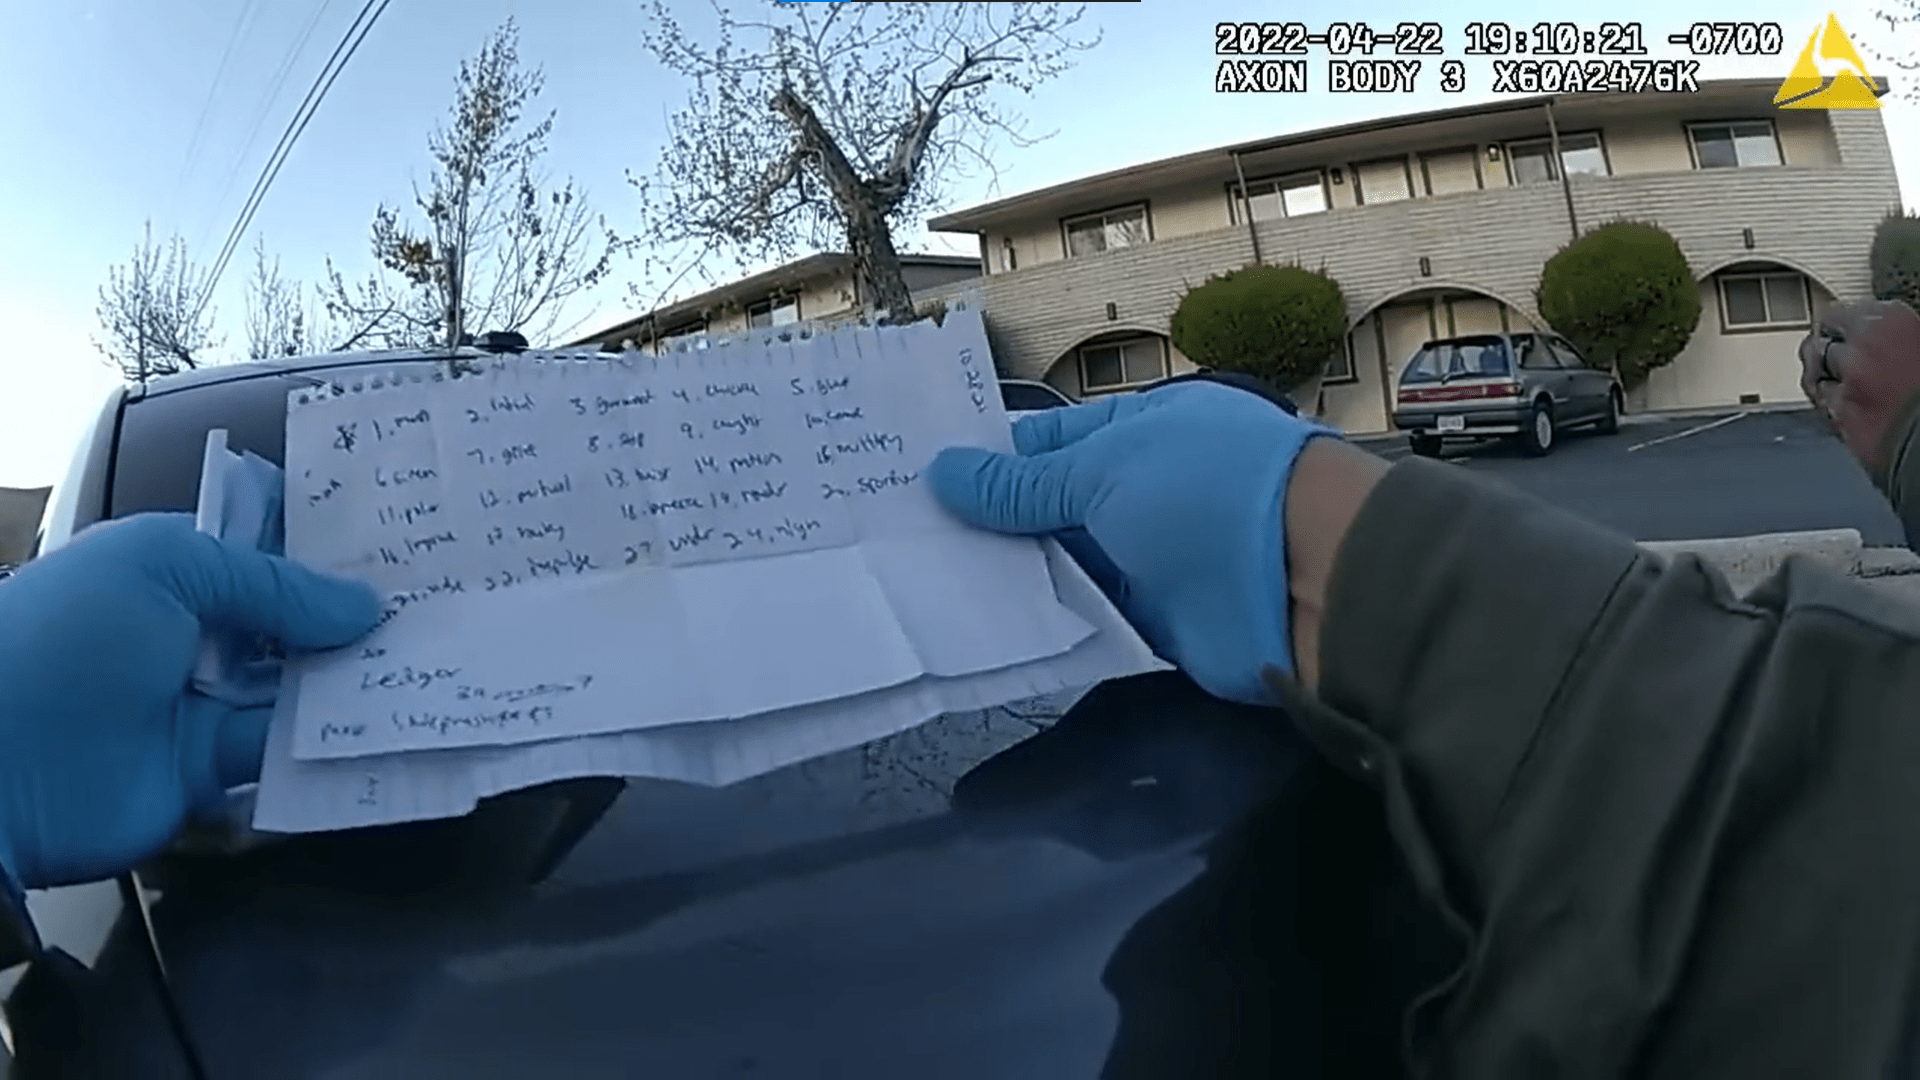 Полицейская нательная камера слила сид-фразу подозреваемого во время осмотра автомобиля